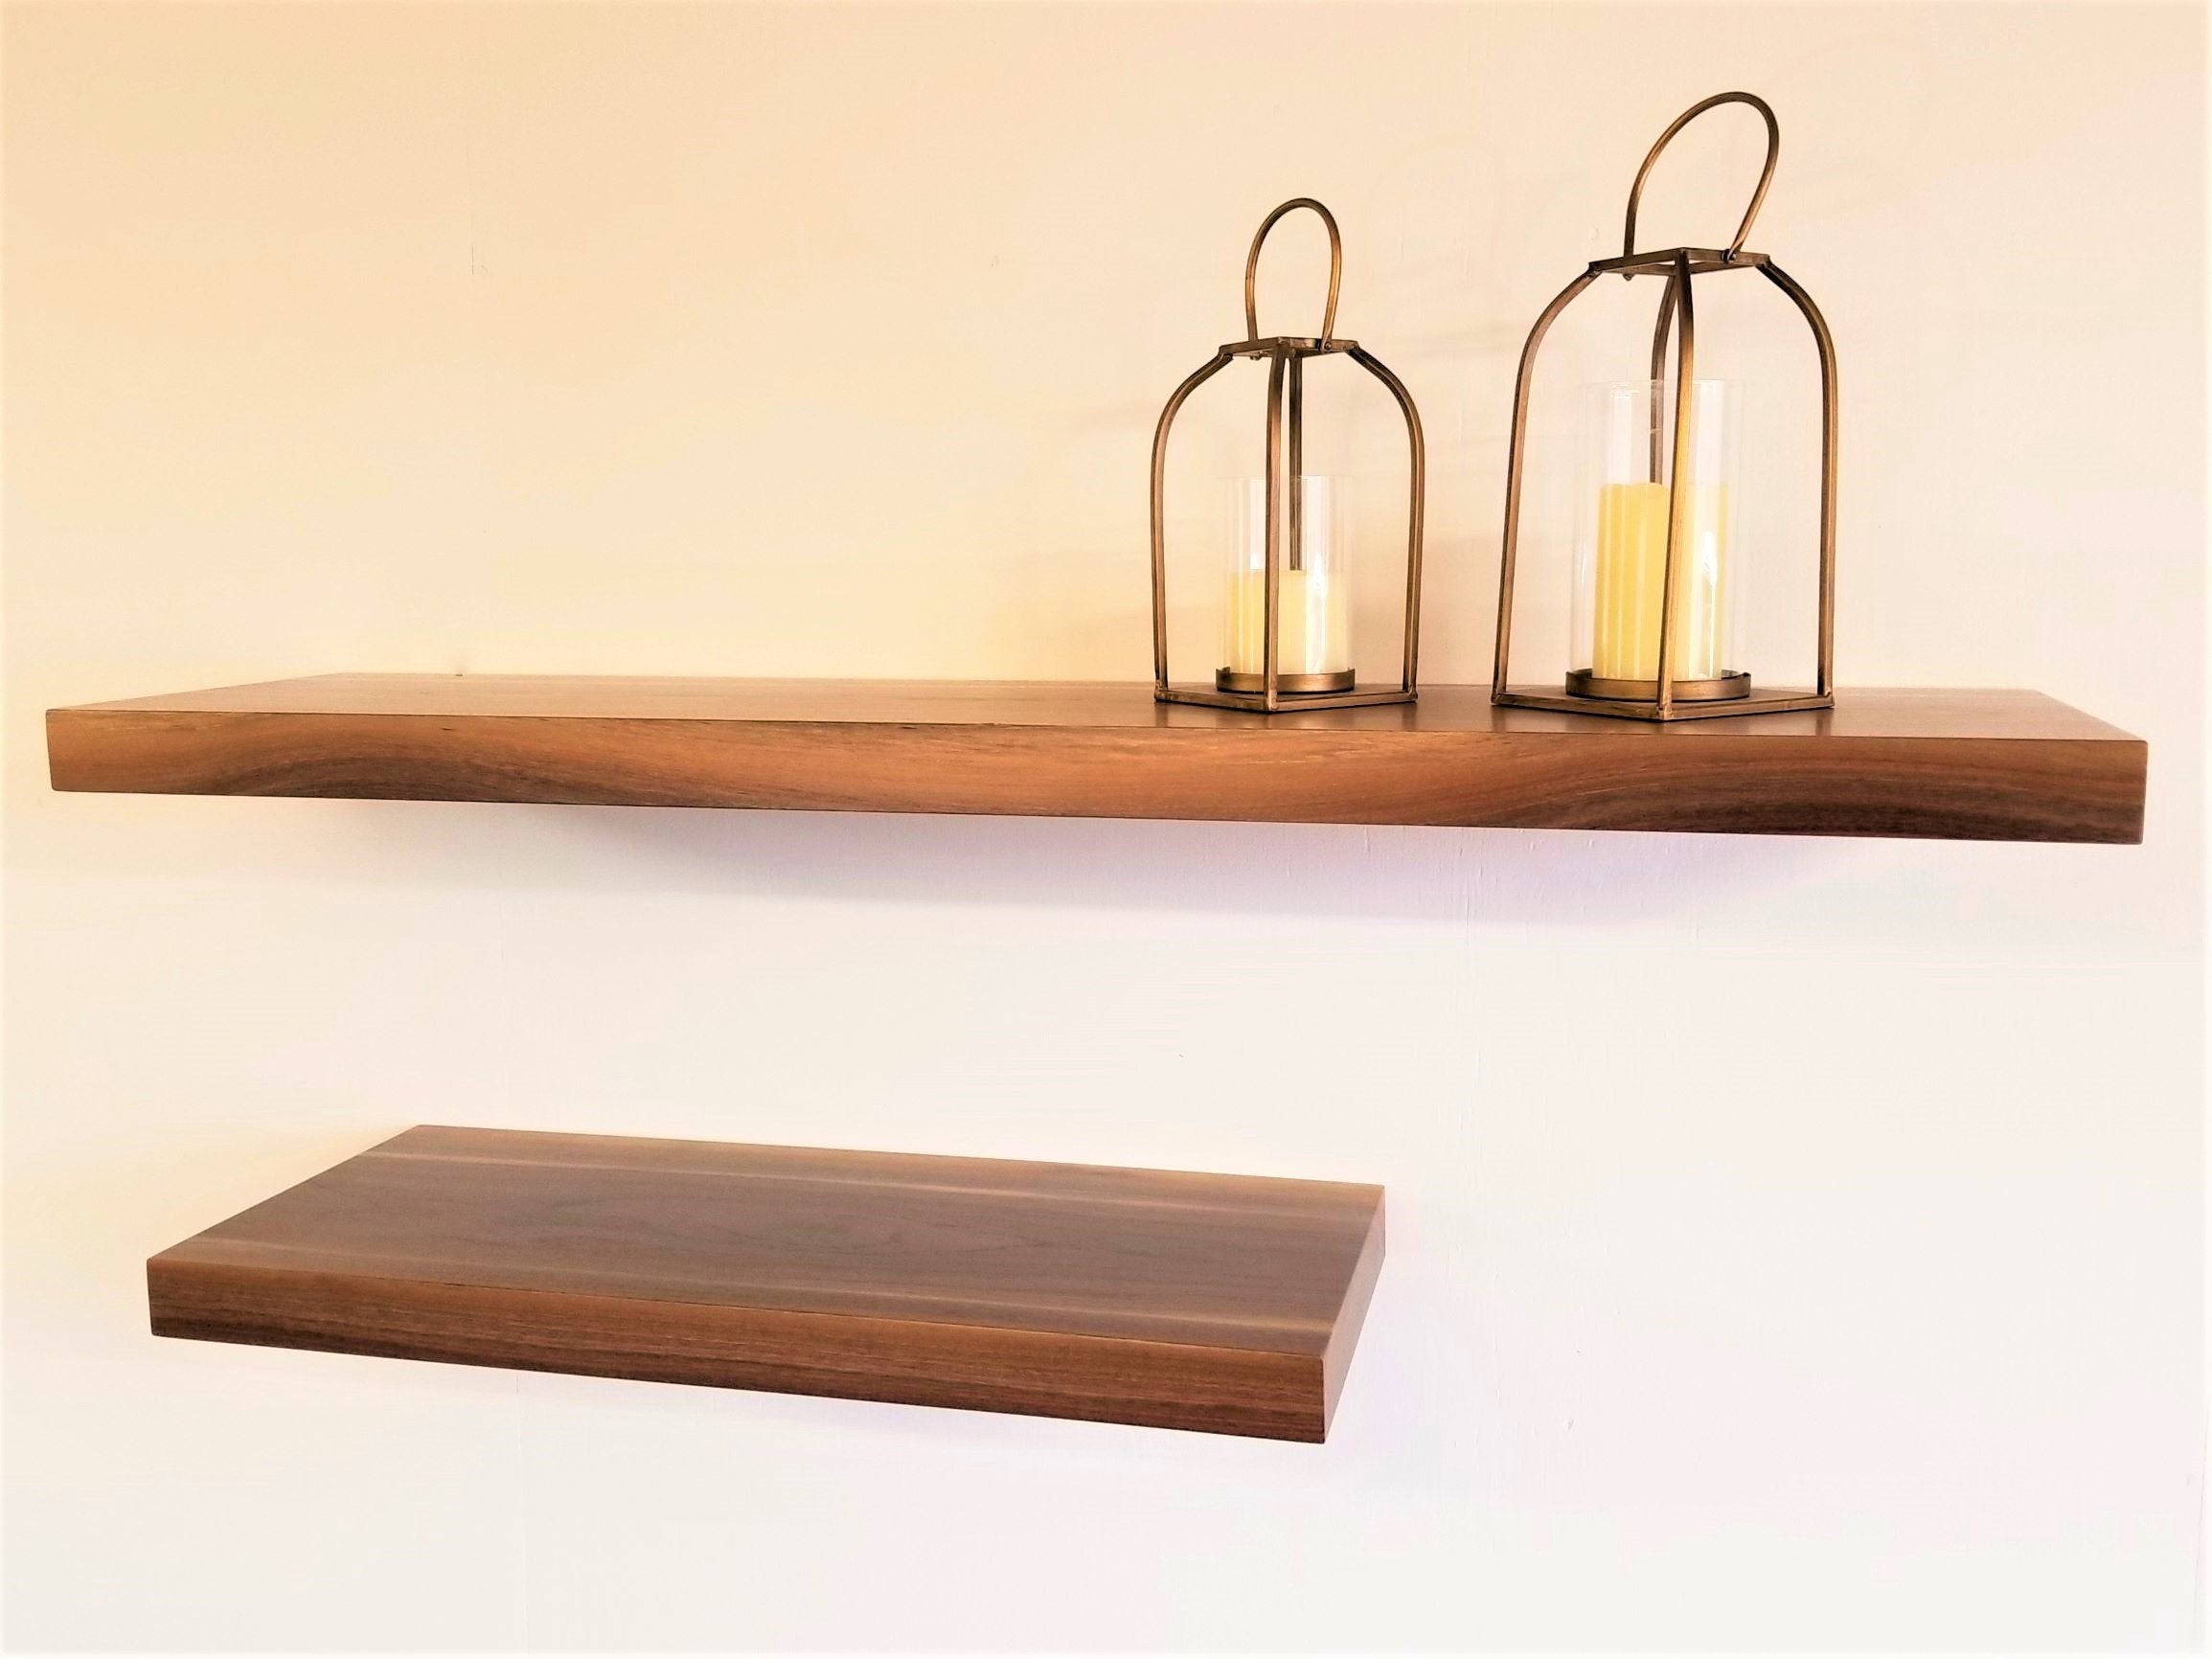 Modern shelving for bathroom, wood floating shelves